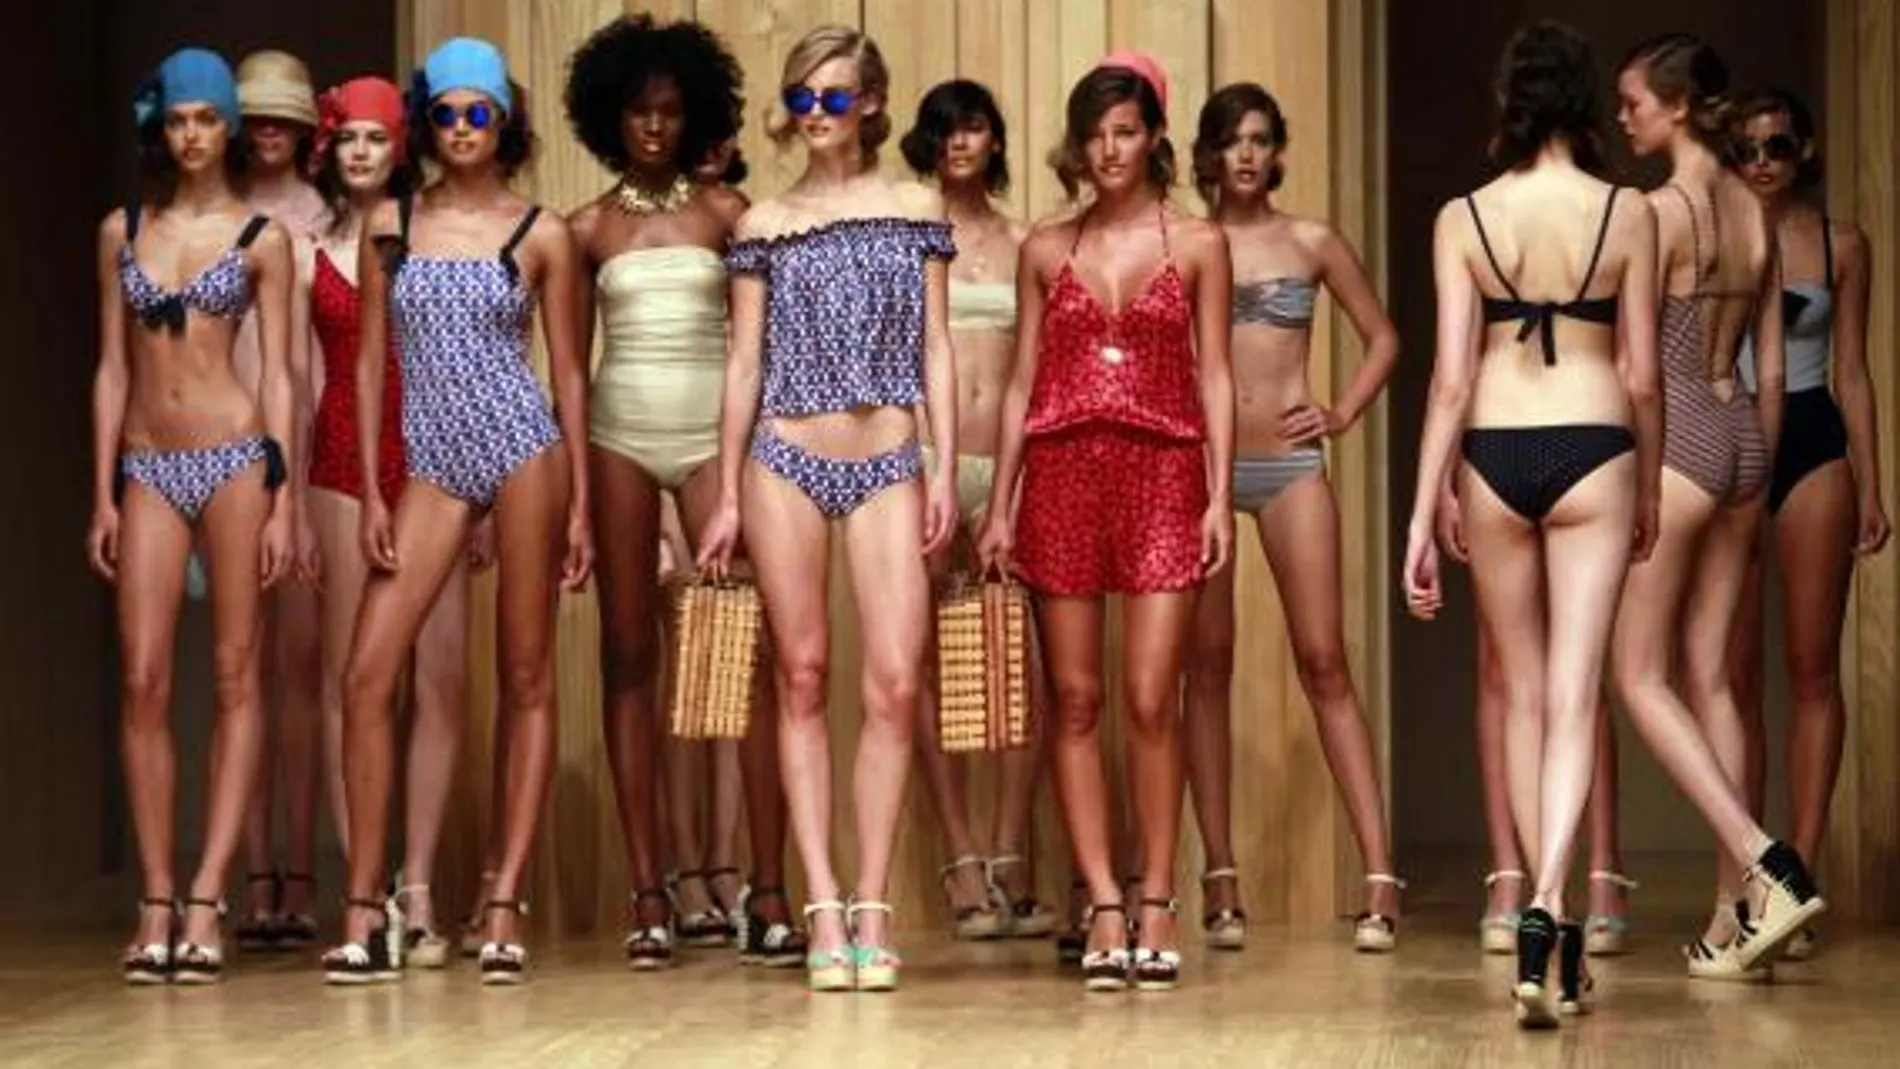 Las modelos posan al finalizar el desfile de Guillermina Baeza, que hoy ha presentado su colección de baño primavera-verano 2015.